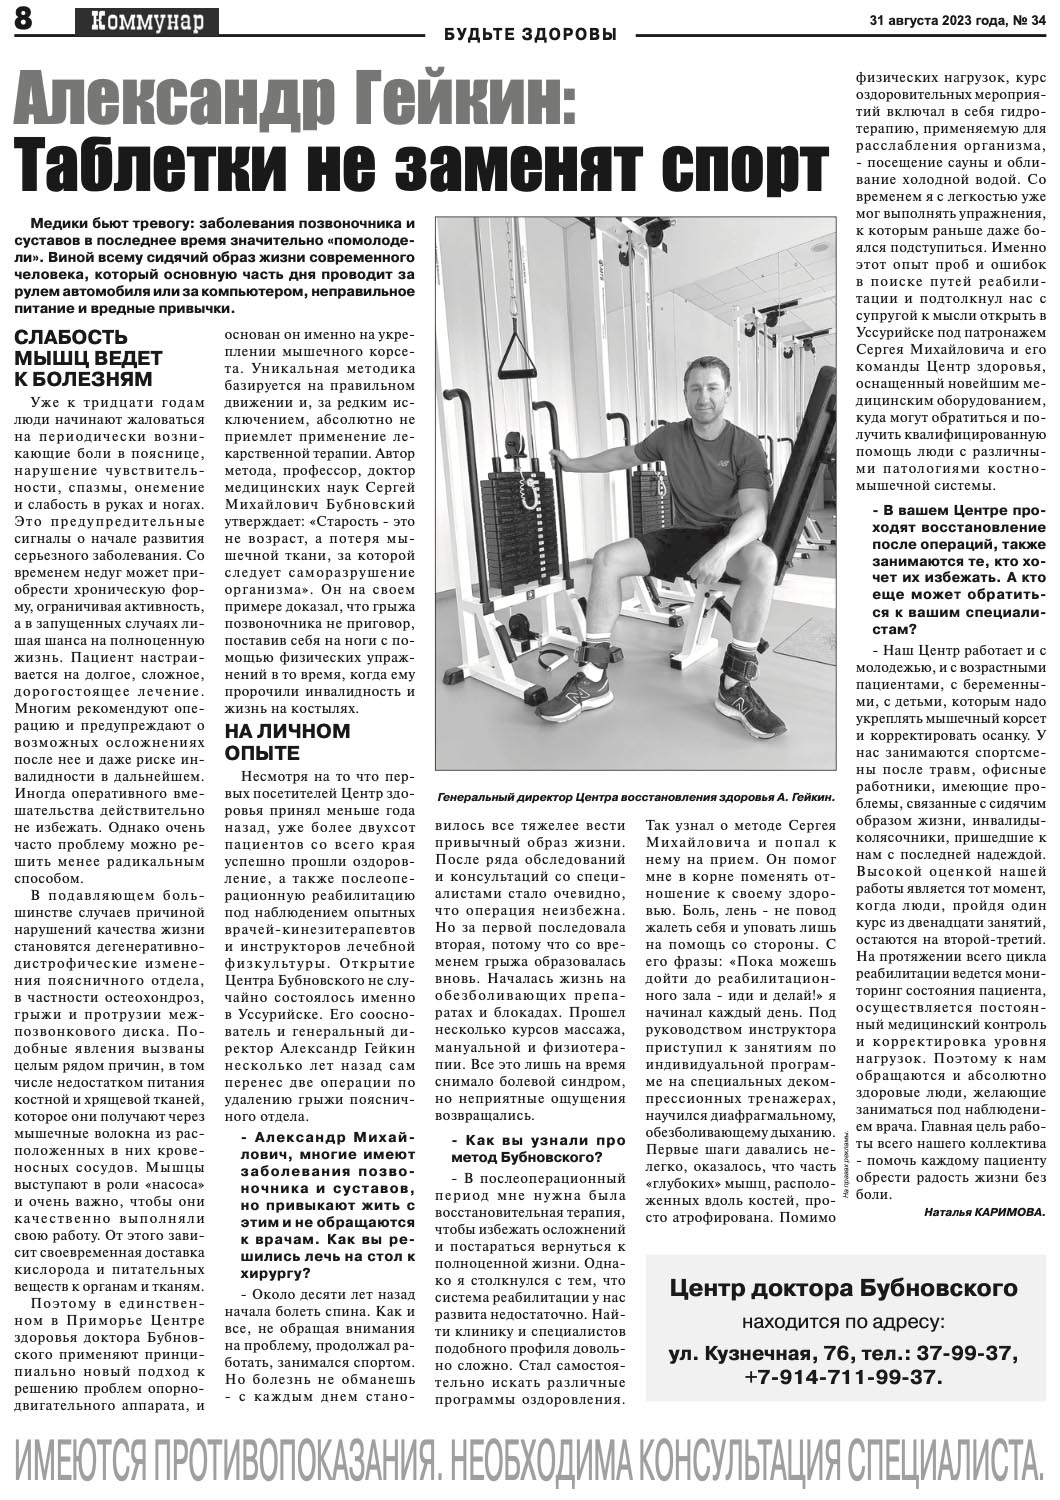 Публикация в газете "Коммунар" от 31 августа 2023 года.jpg